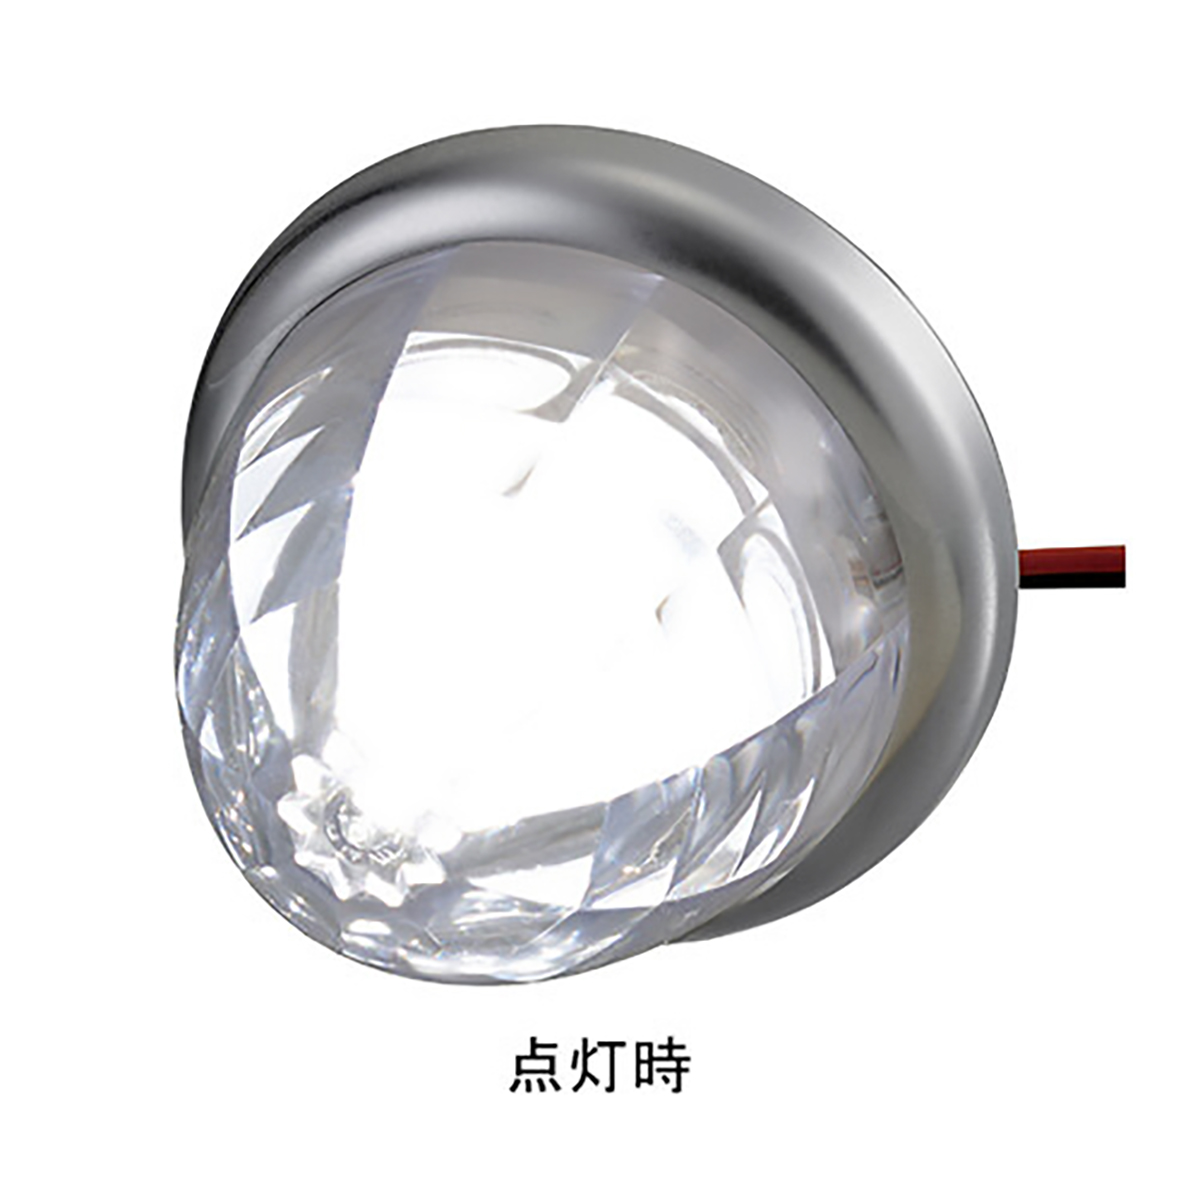 マーカー ランプ SMD LED プラスチックレンズ ホワイト DC12/DC24V 防水